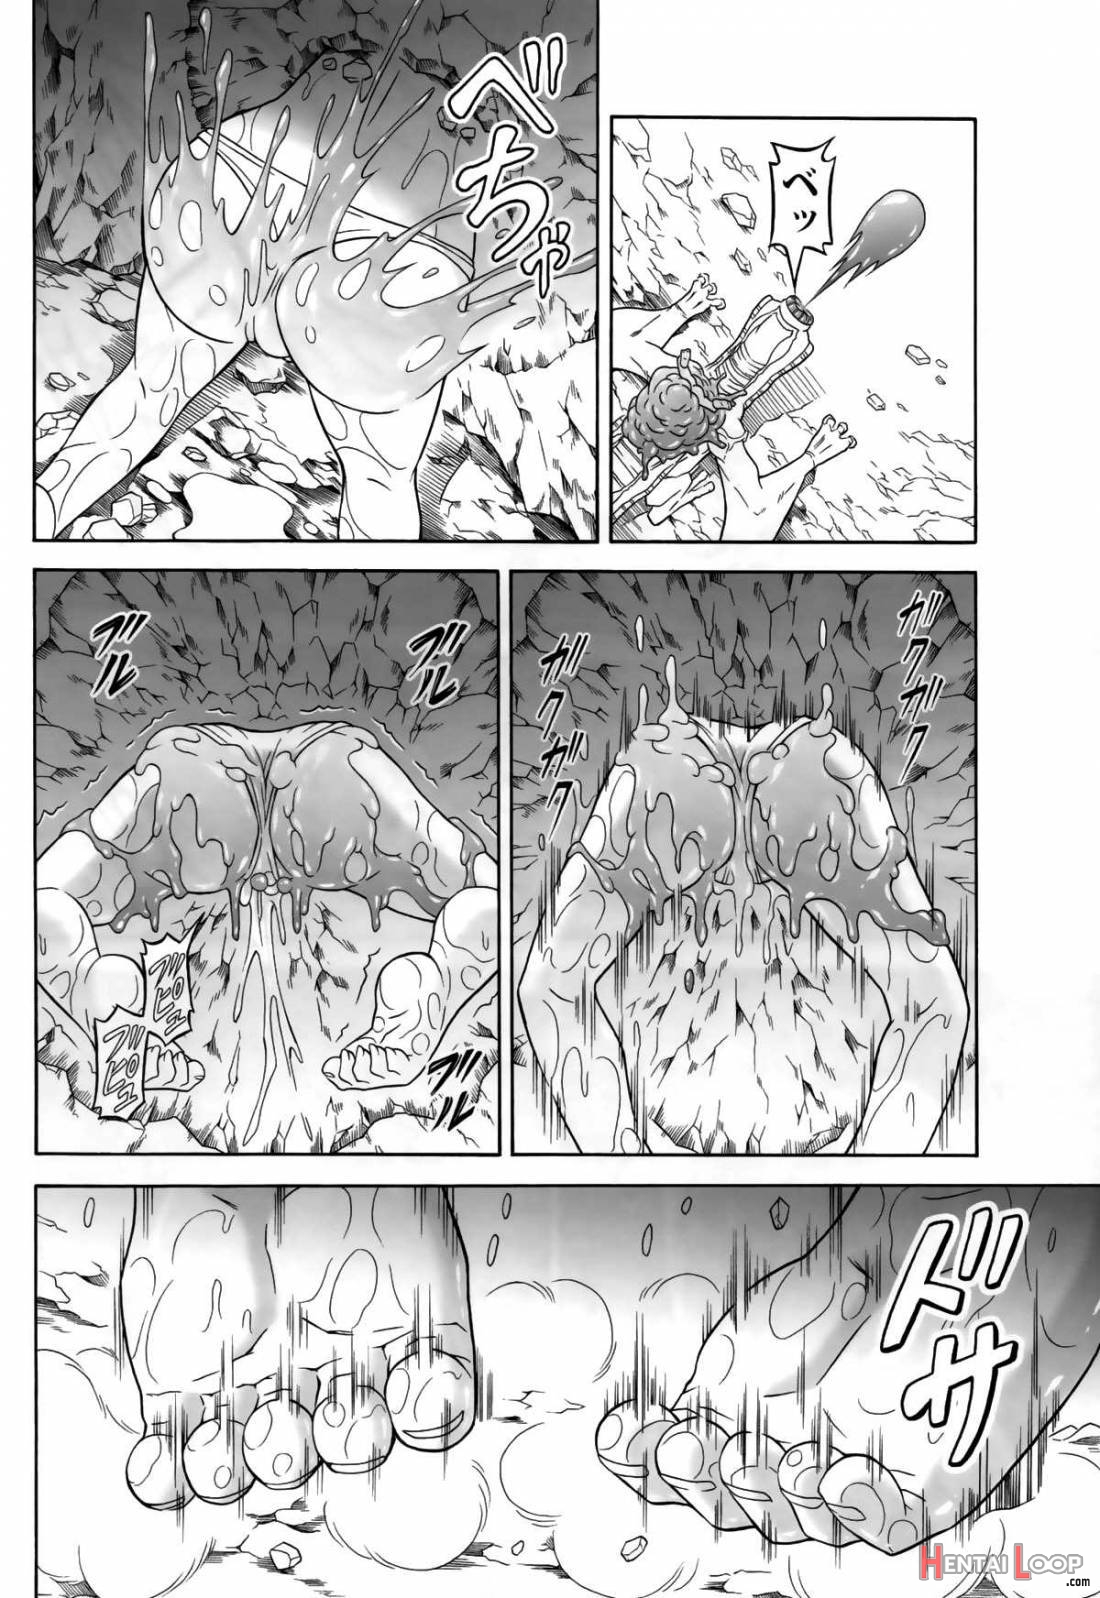 Solo Hunter no Seitai 4 The second part page 21